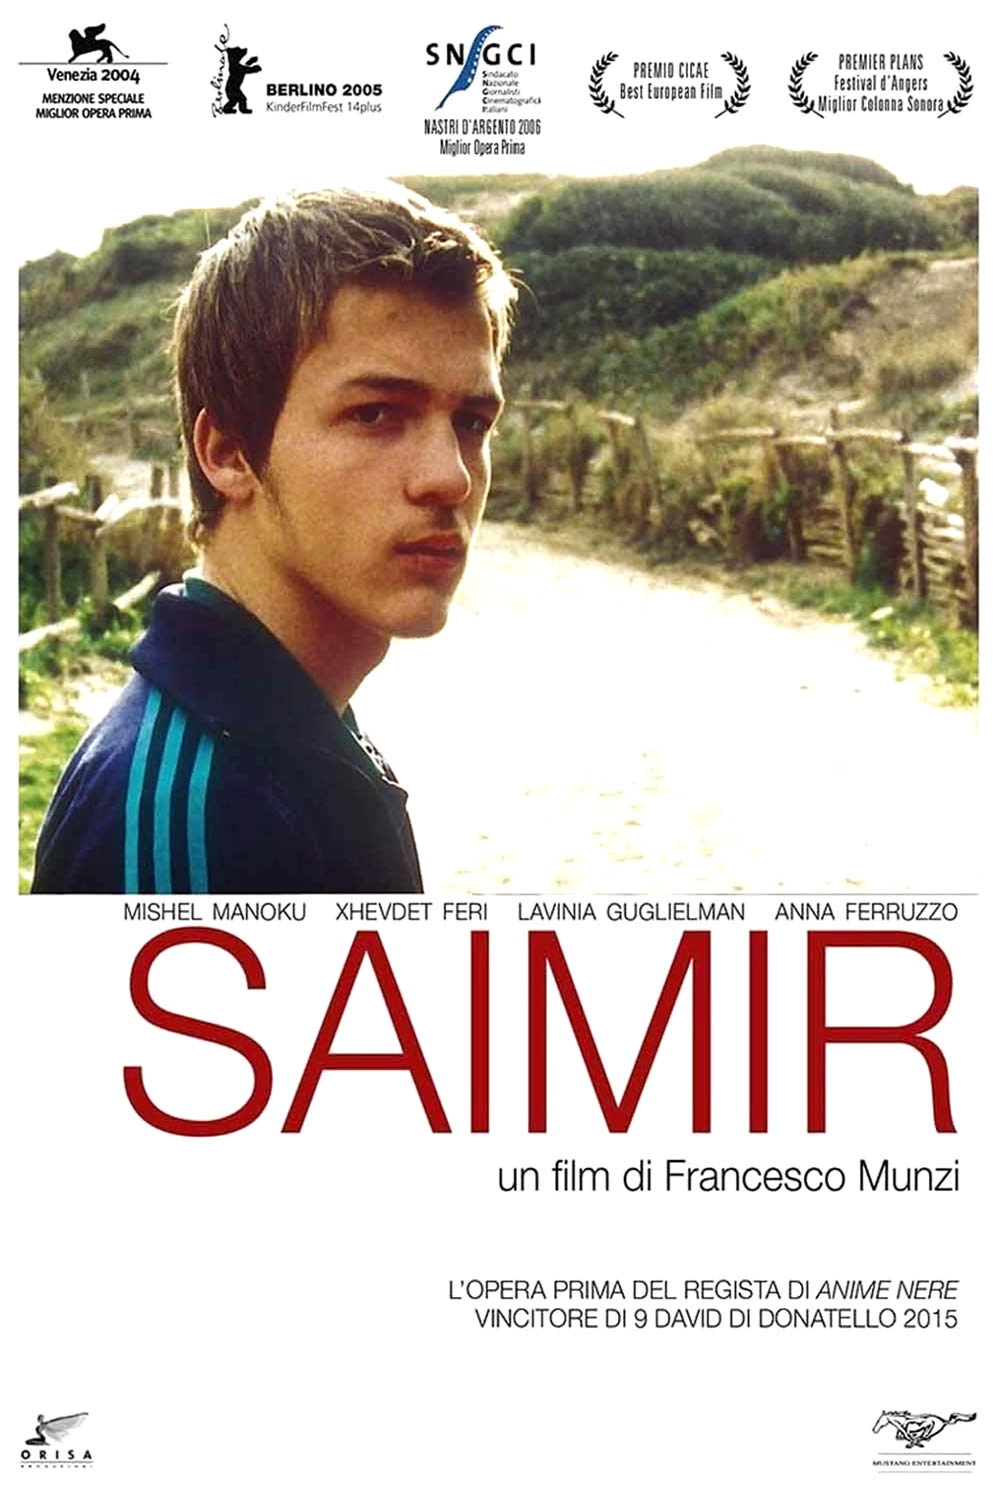 Saimir (2004)